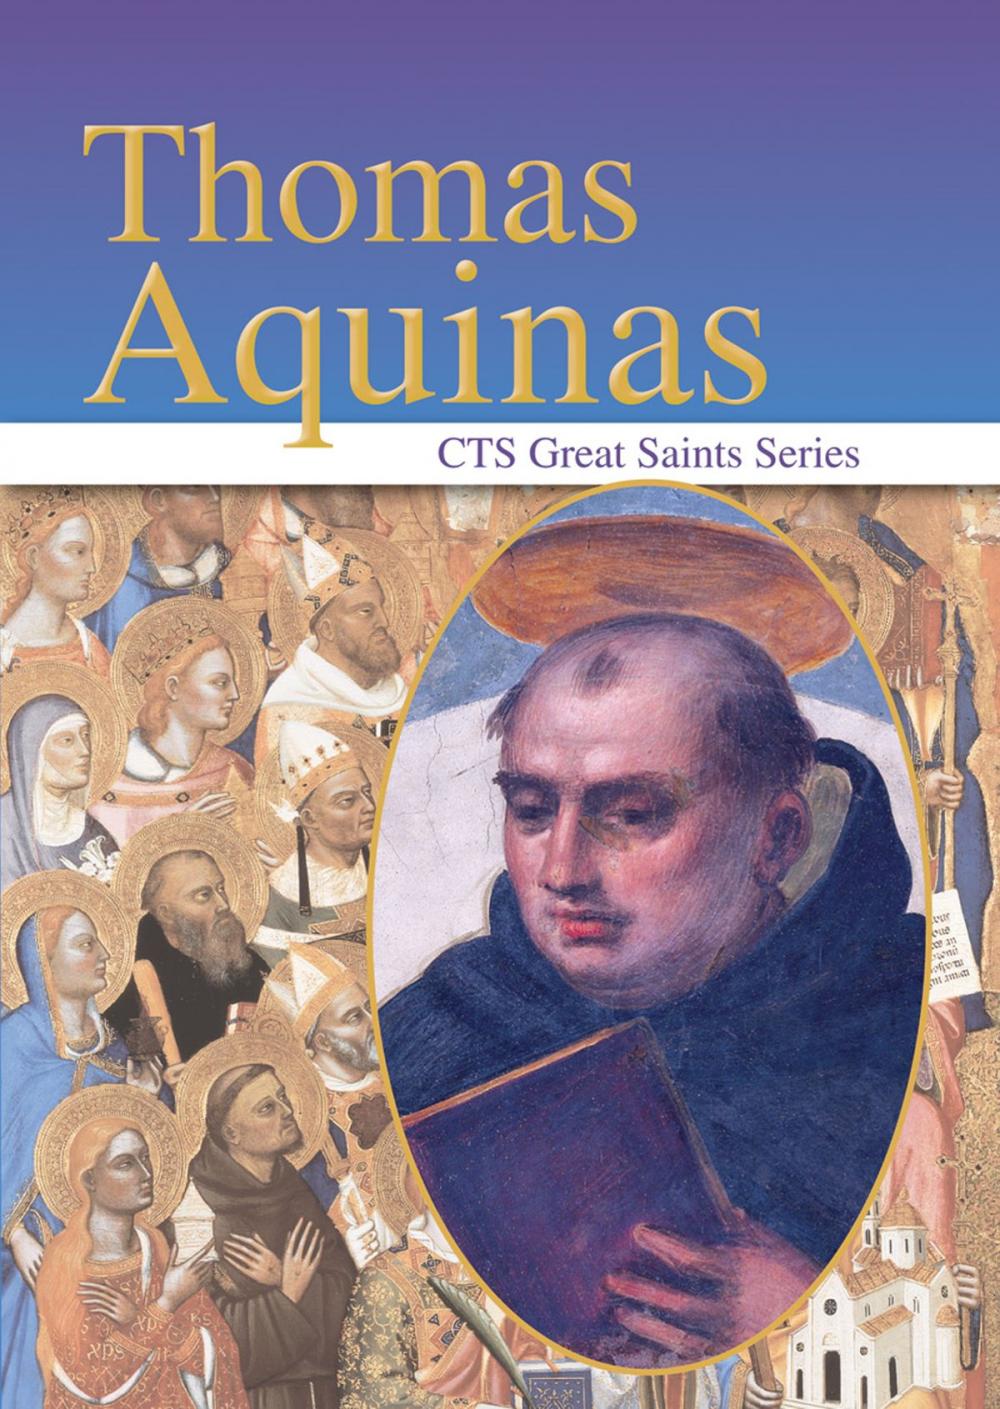 Big bigCover of Thomas Aquinas